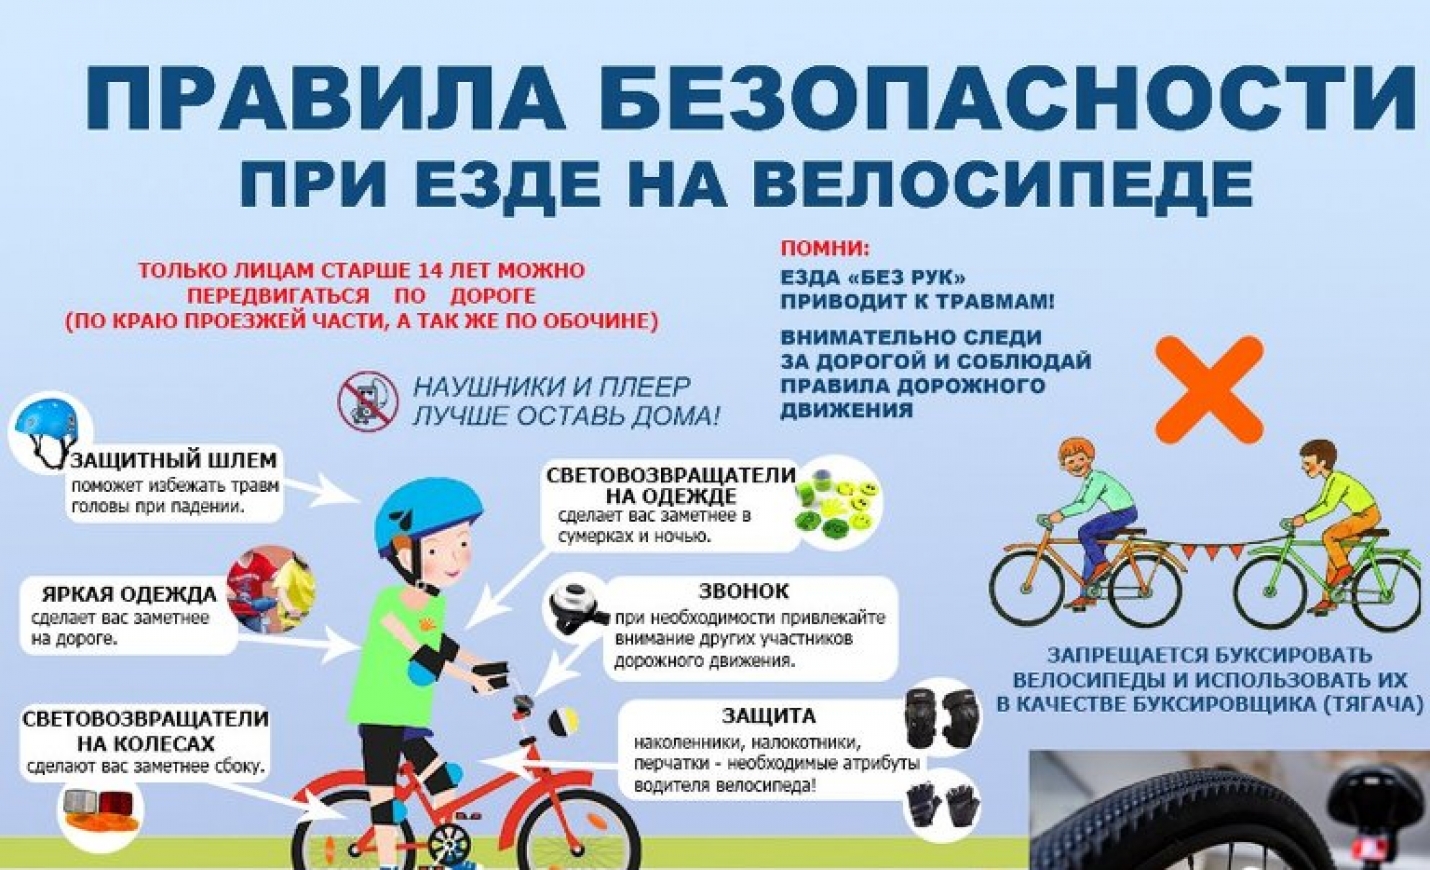 Правила велосипедиста до 14 лет. Памятка ПДД для велосипедистов для детей. Правила для велосипедистов. Безопасность езды на велосипеде. Правила езды на велосипеде.